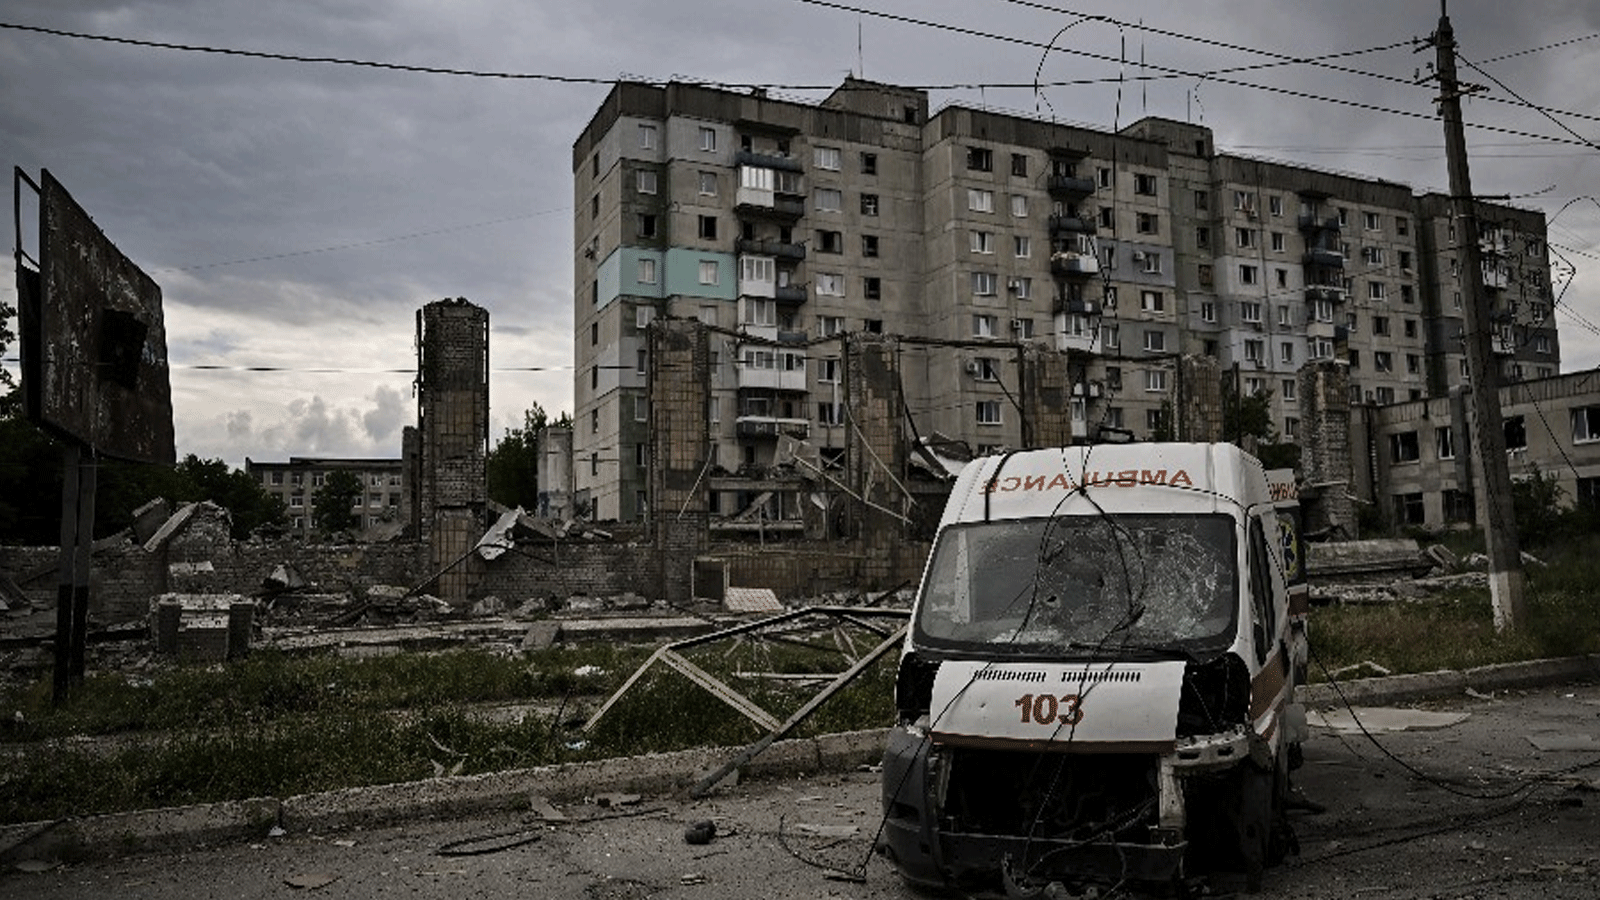 لقطة من الدمار الواقع في ليسيتشانسك بفعل القصف الروسي